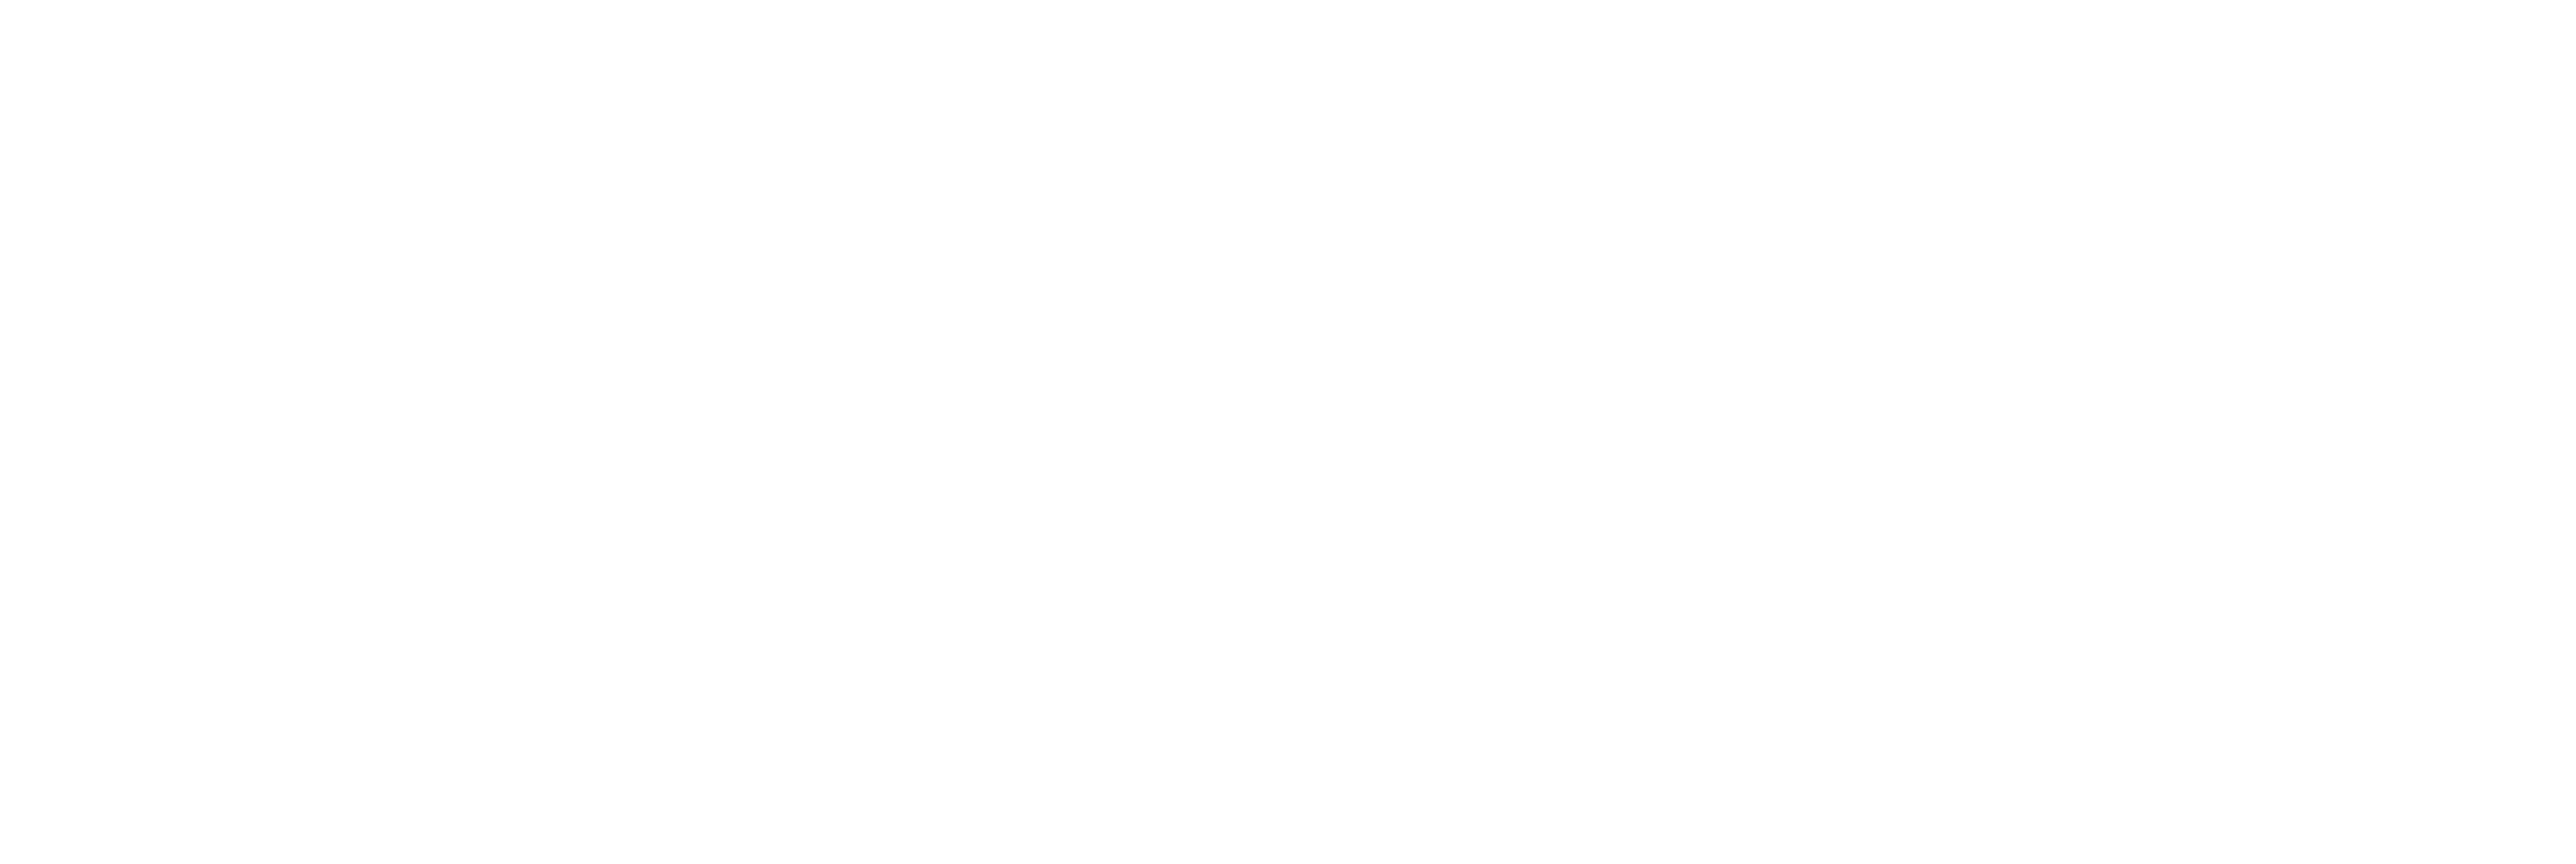 digital spiders